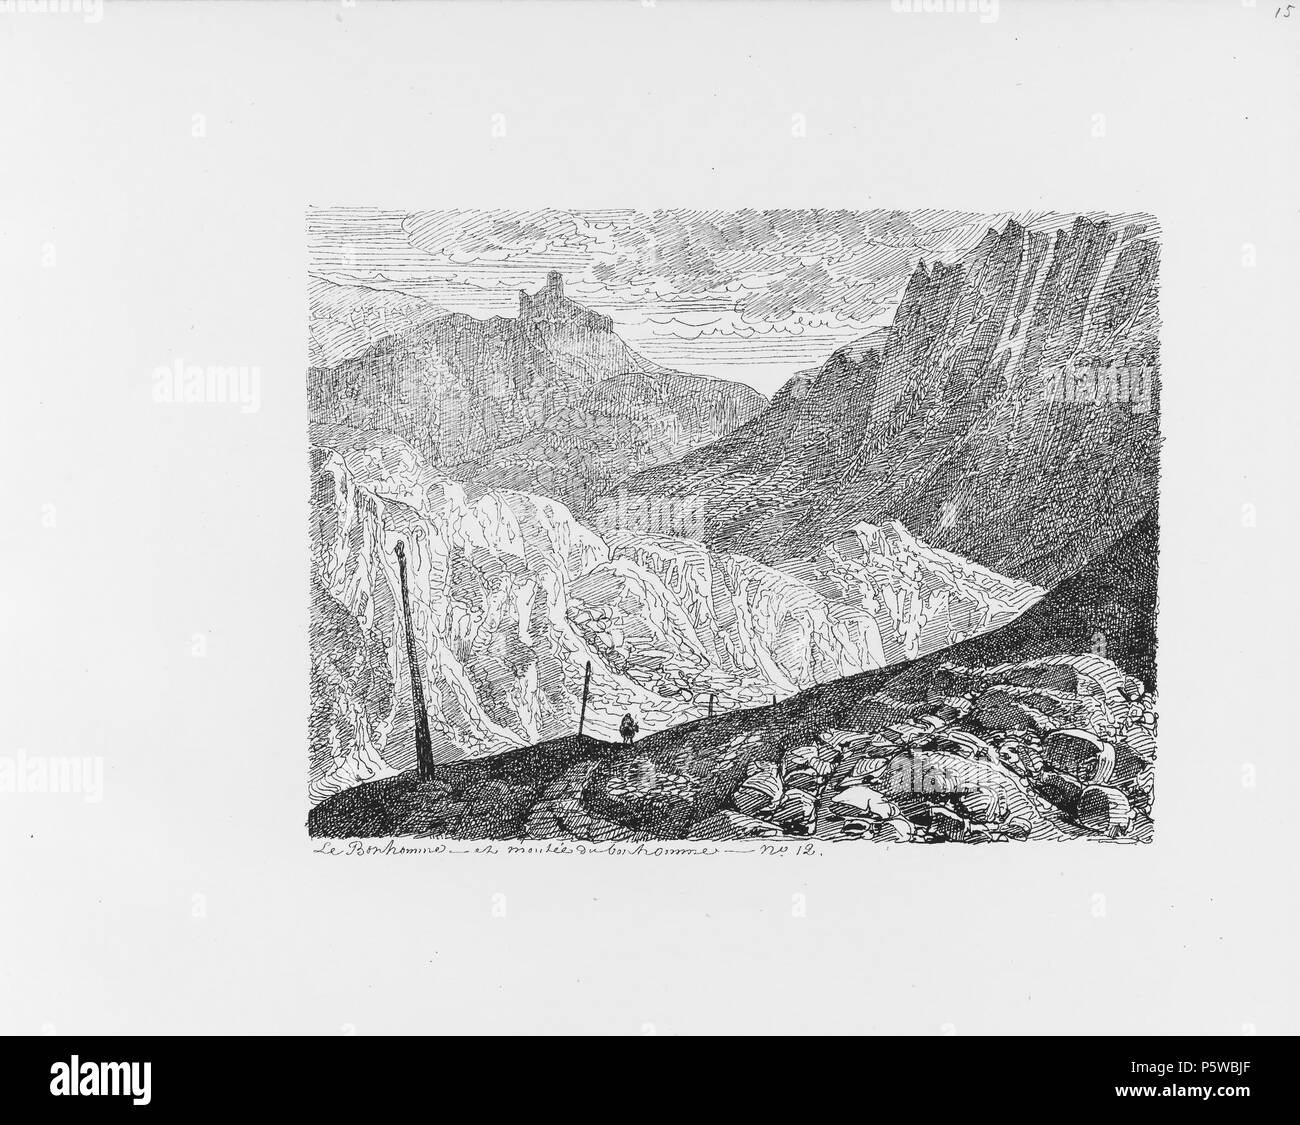 322 CH-NB-Voyage autour du Mont-Blanc dans les vallées d'Hérens de Zermatt et au Grimsel 1843-nbdig-19161-014 Stock Photo